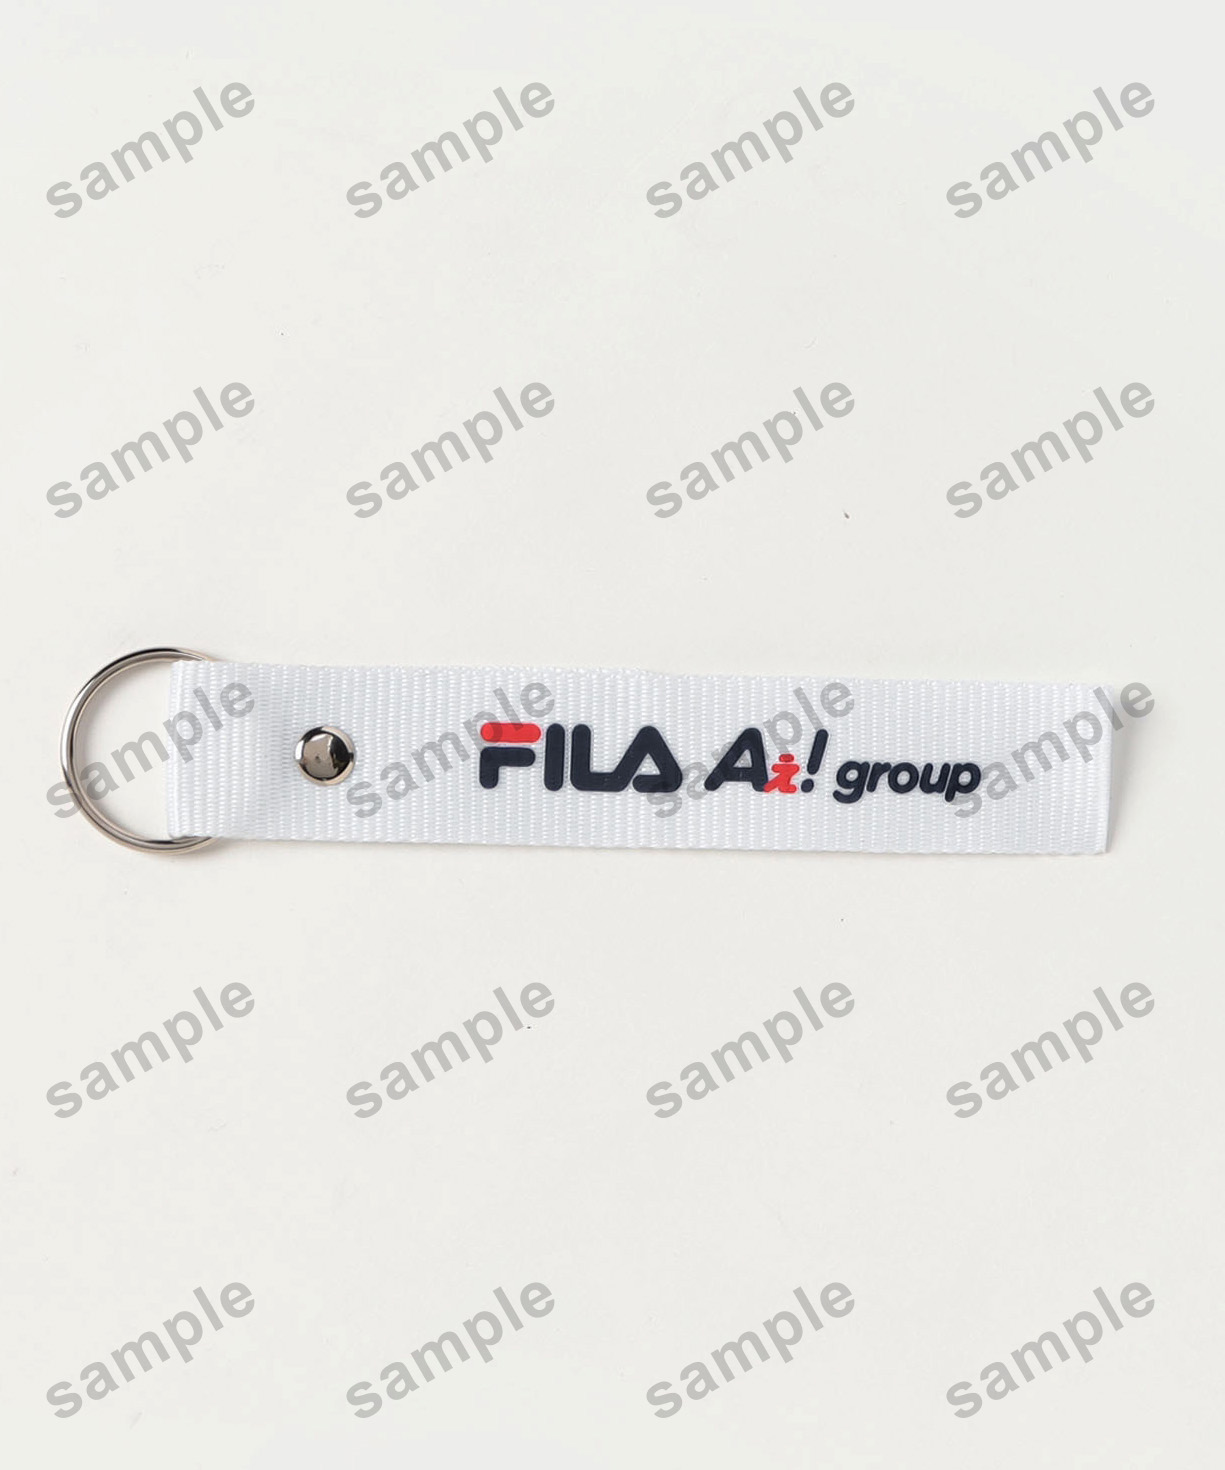 Aぇ! group」が着用するFILAの限定コレクション| FILA 公式サイト